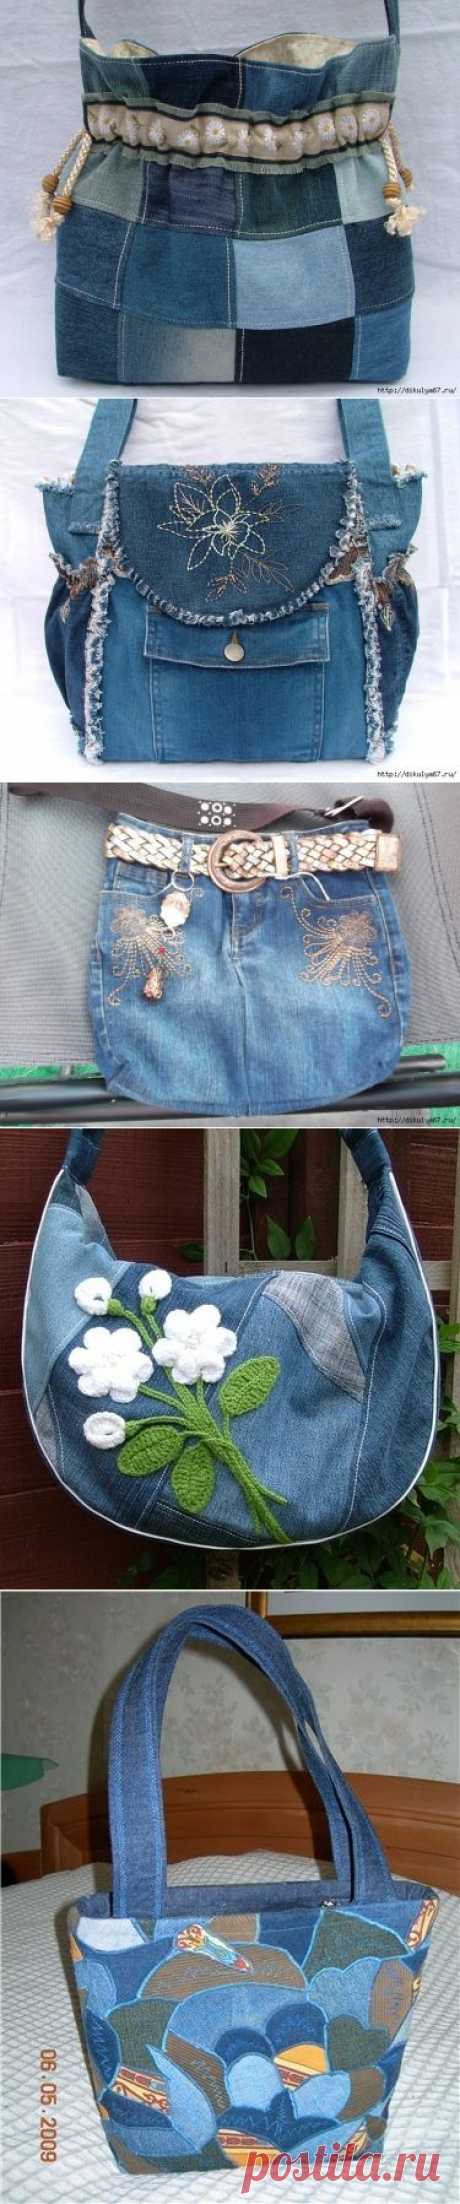 Джинсовые переделки - сумка из джинсов - Рукоделие